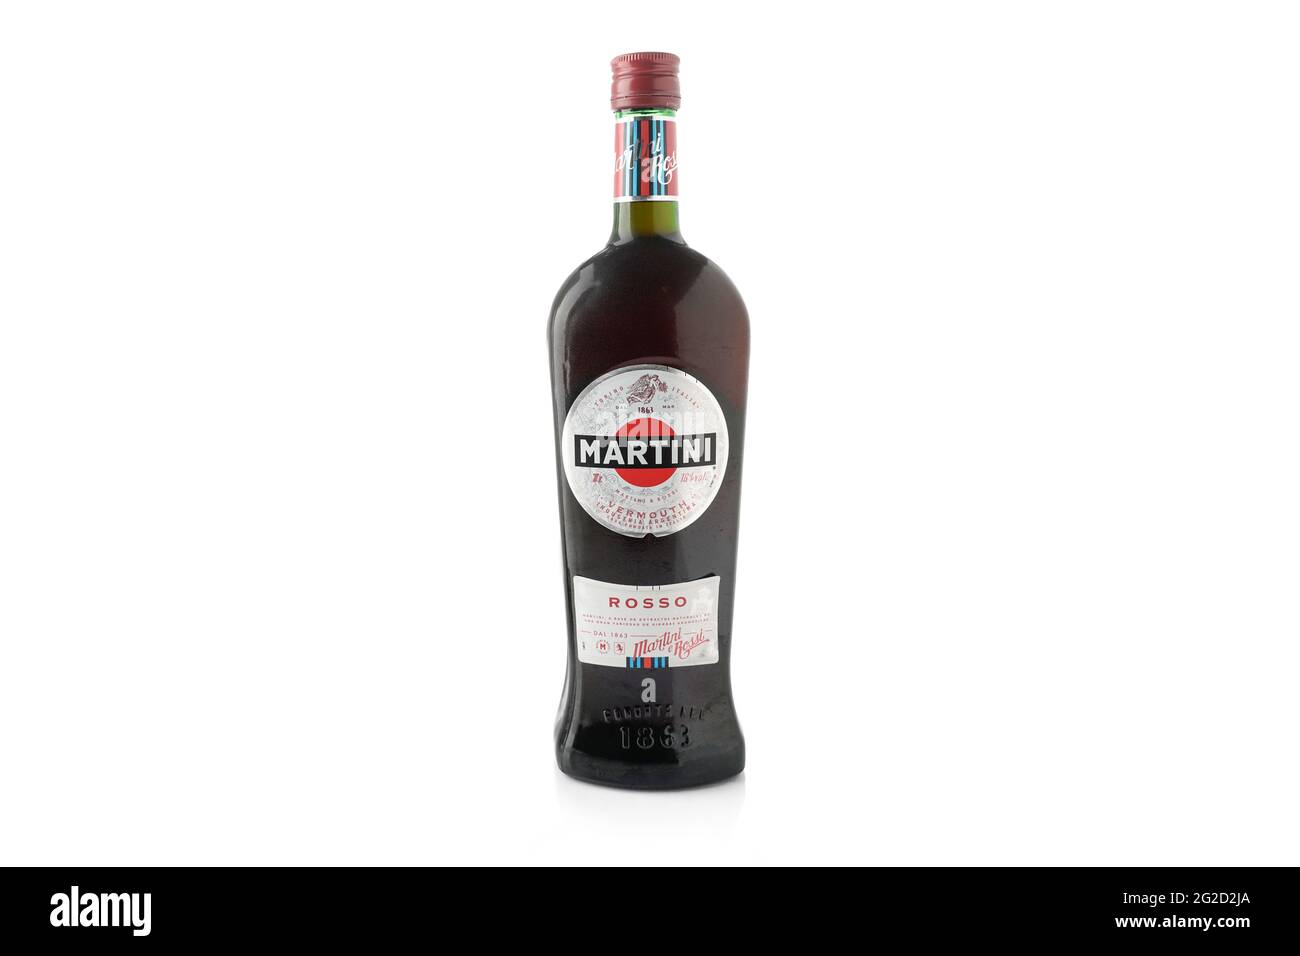 Martini rosso Vermouth Flasche auf weißem Hintergrund. Alkoholisches Getränk. Stockfoto